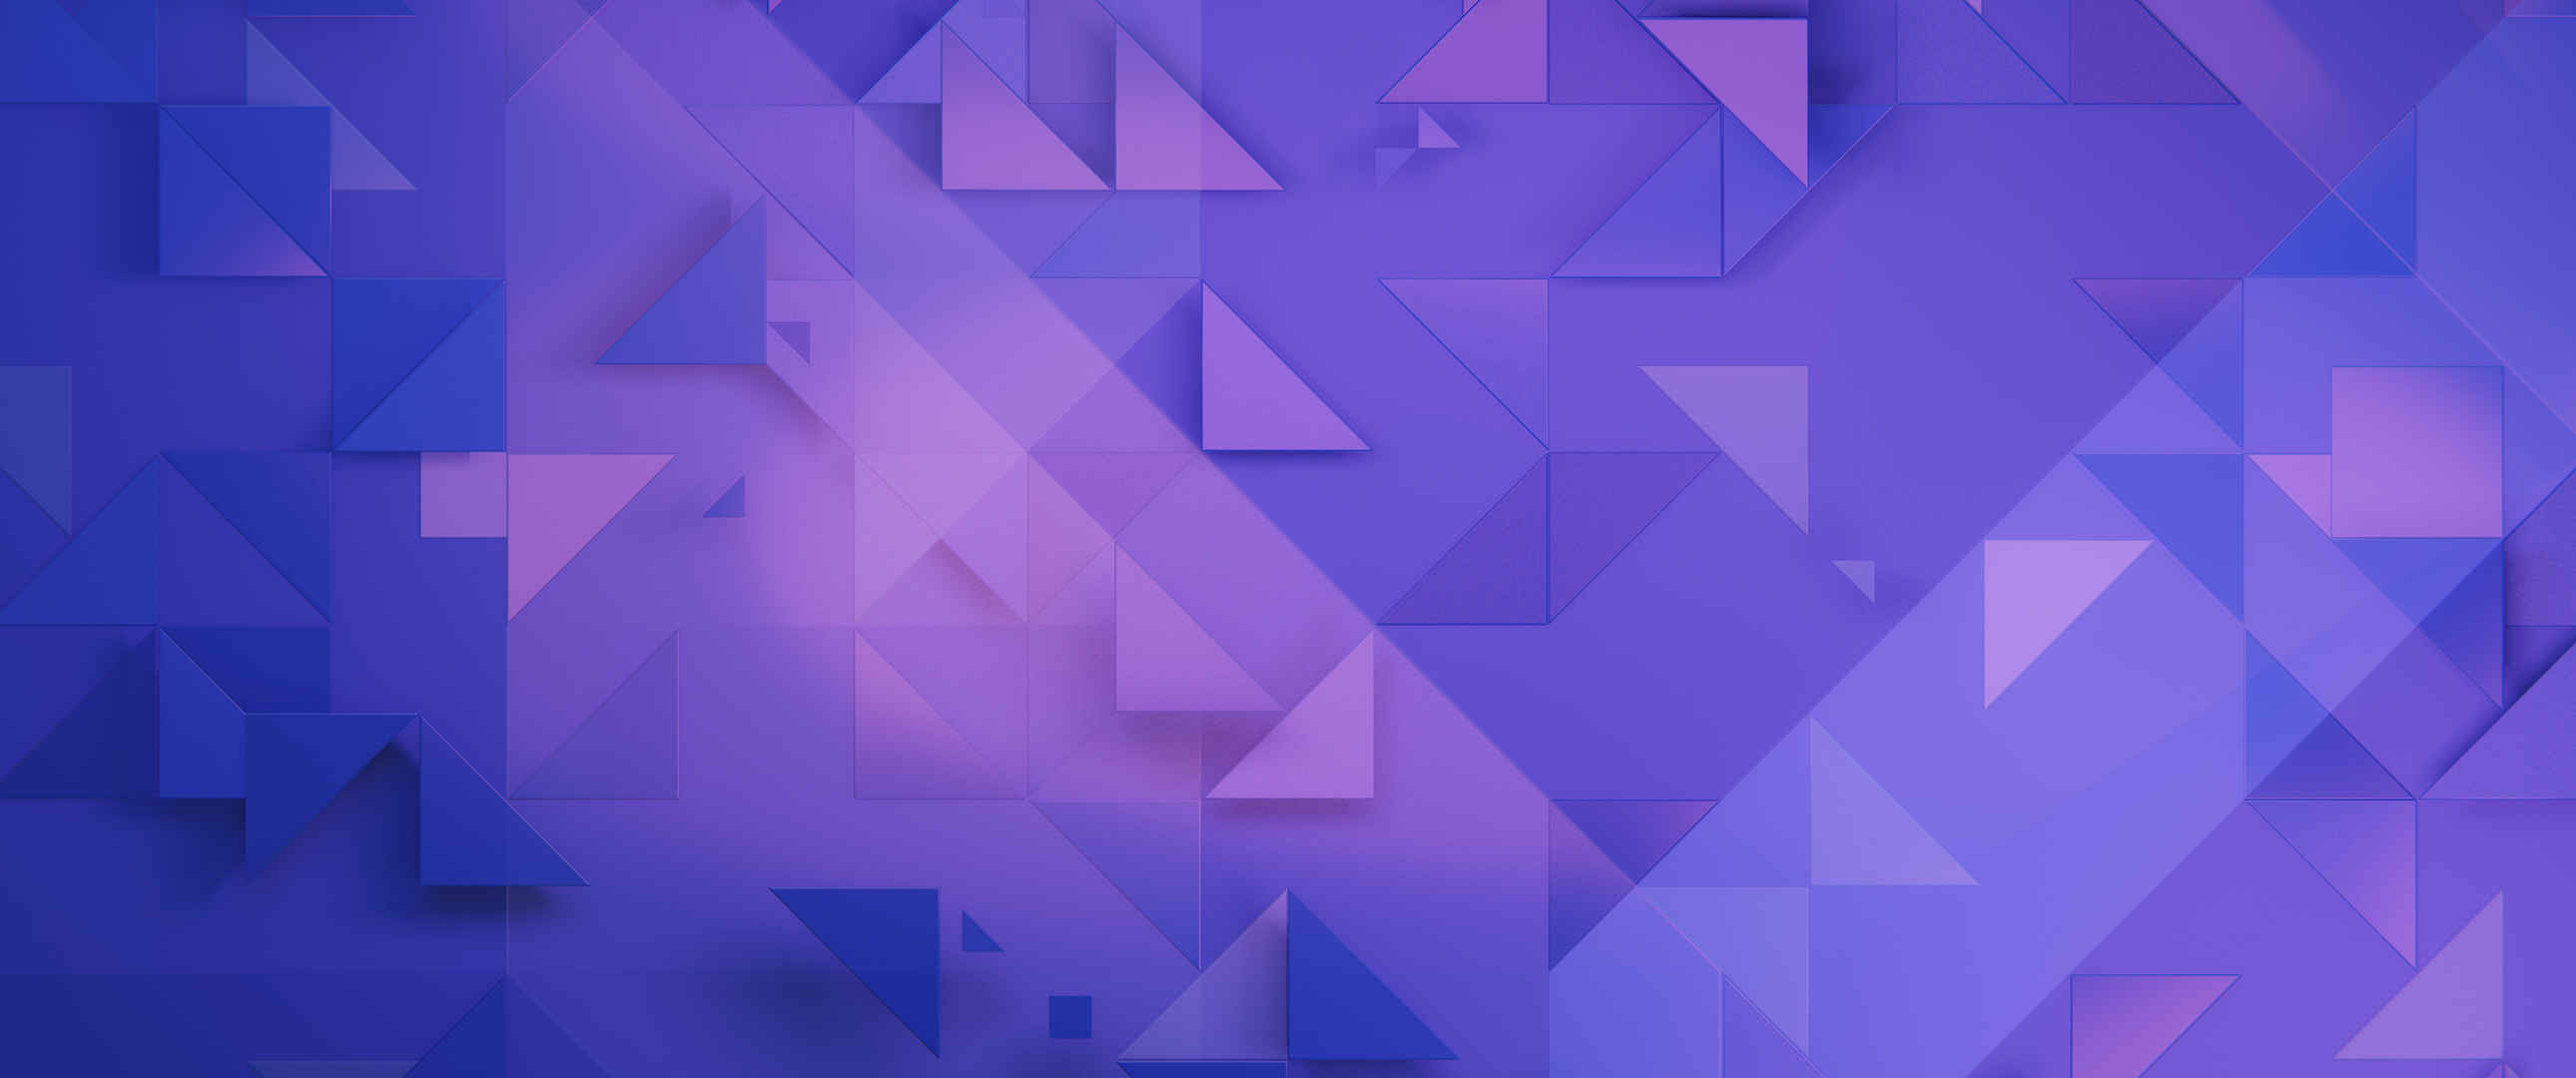 紫色三角形背景壁纸-